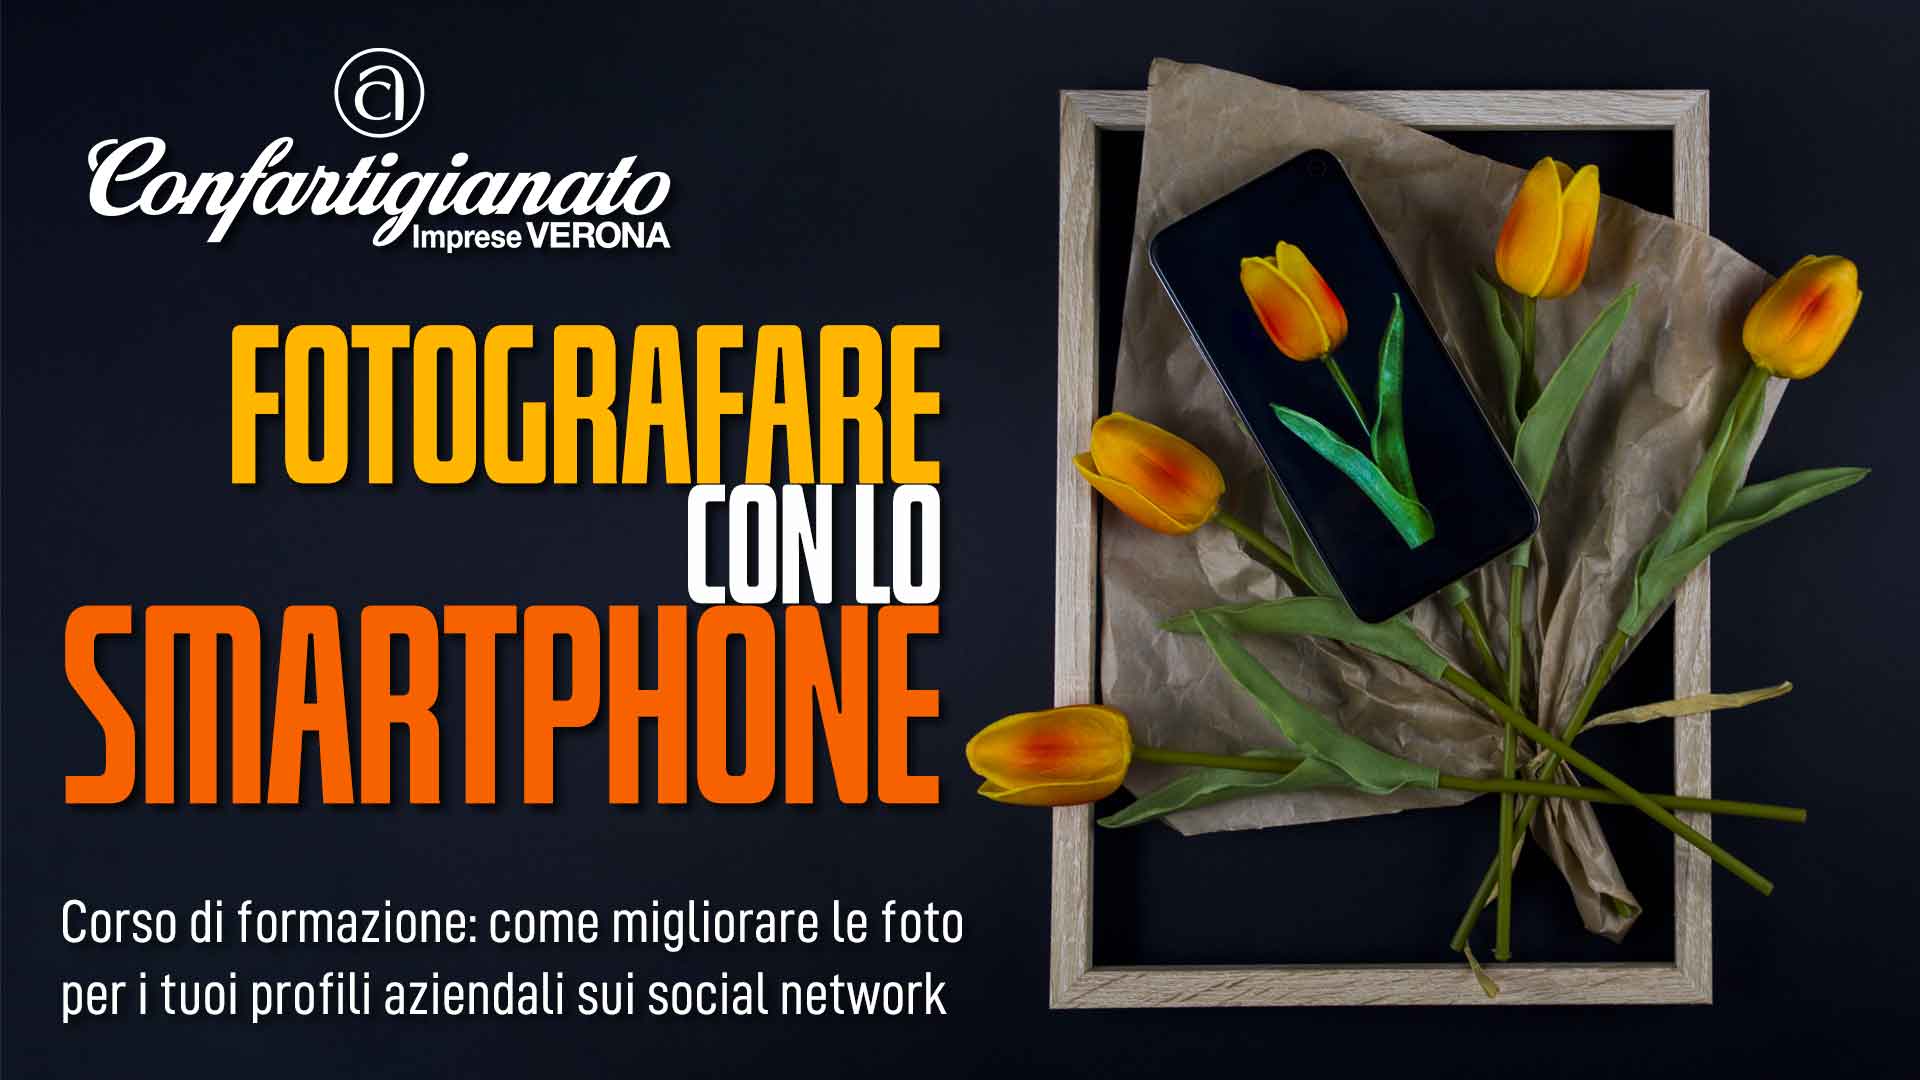 CORSO DI FORMAZIONE - Il 4 e 11 ottobre, "Fotografe con lo Smartphone": migliora le tue foto per i profili aziendali sui social network. Iscriviti subito